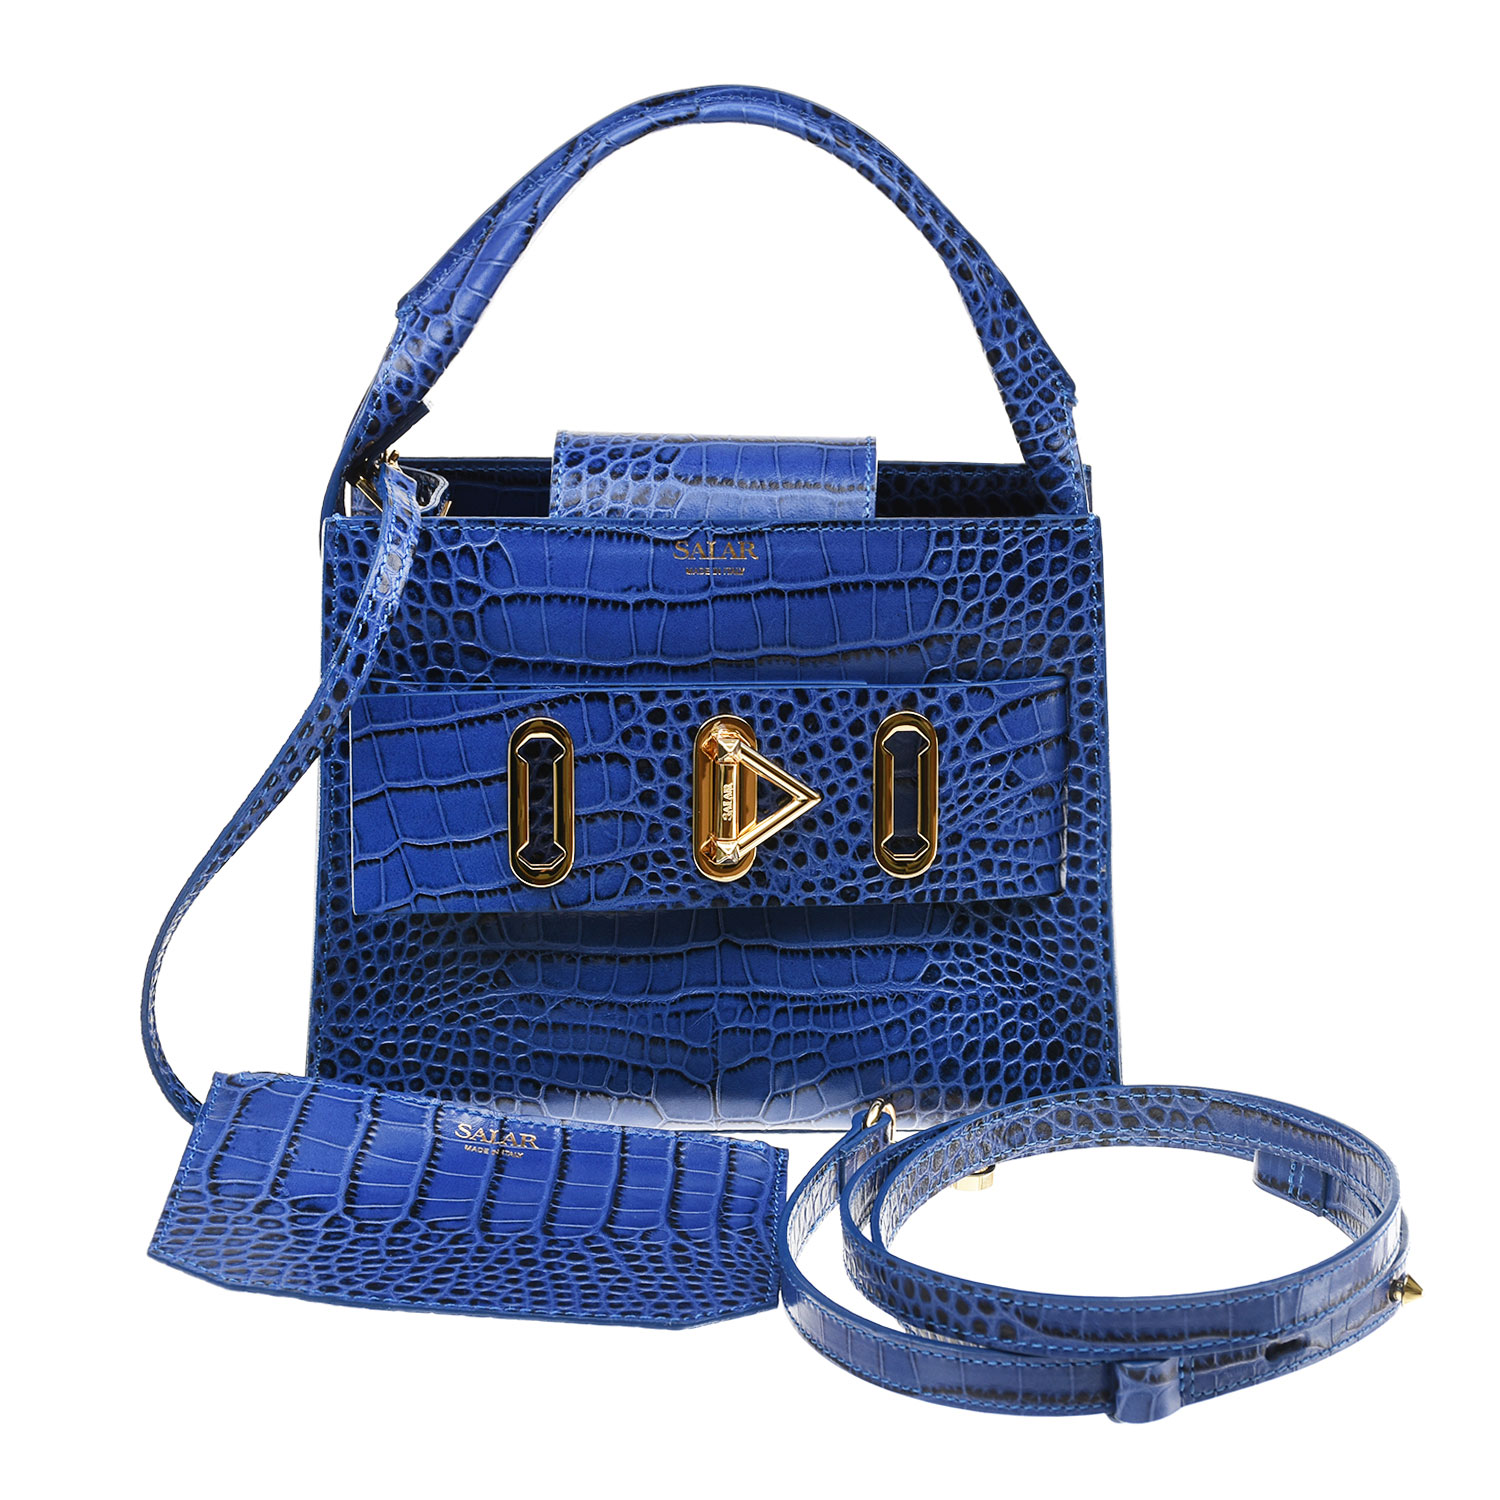 Кожаная сумка с тиснением под крокодила, 23х12х18 см Salar, размер unica, цвет синий